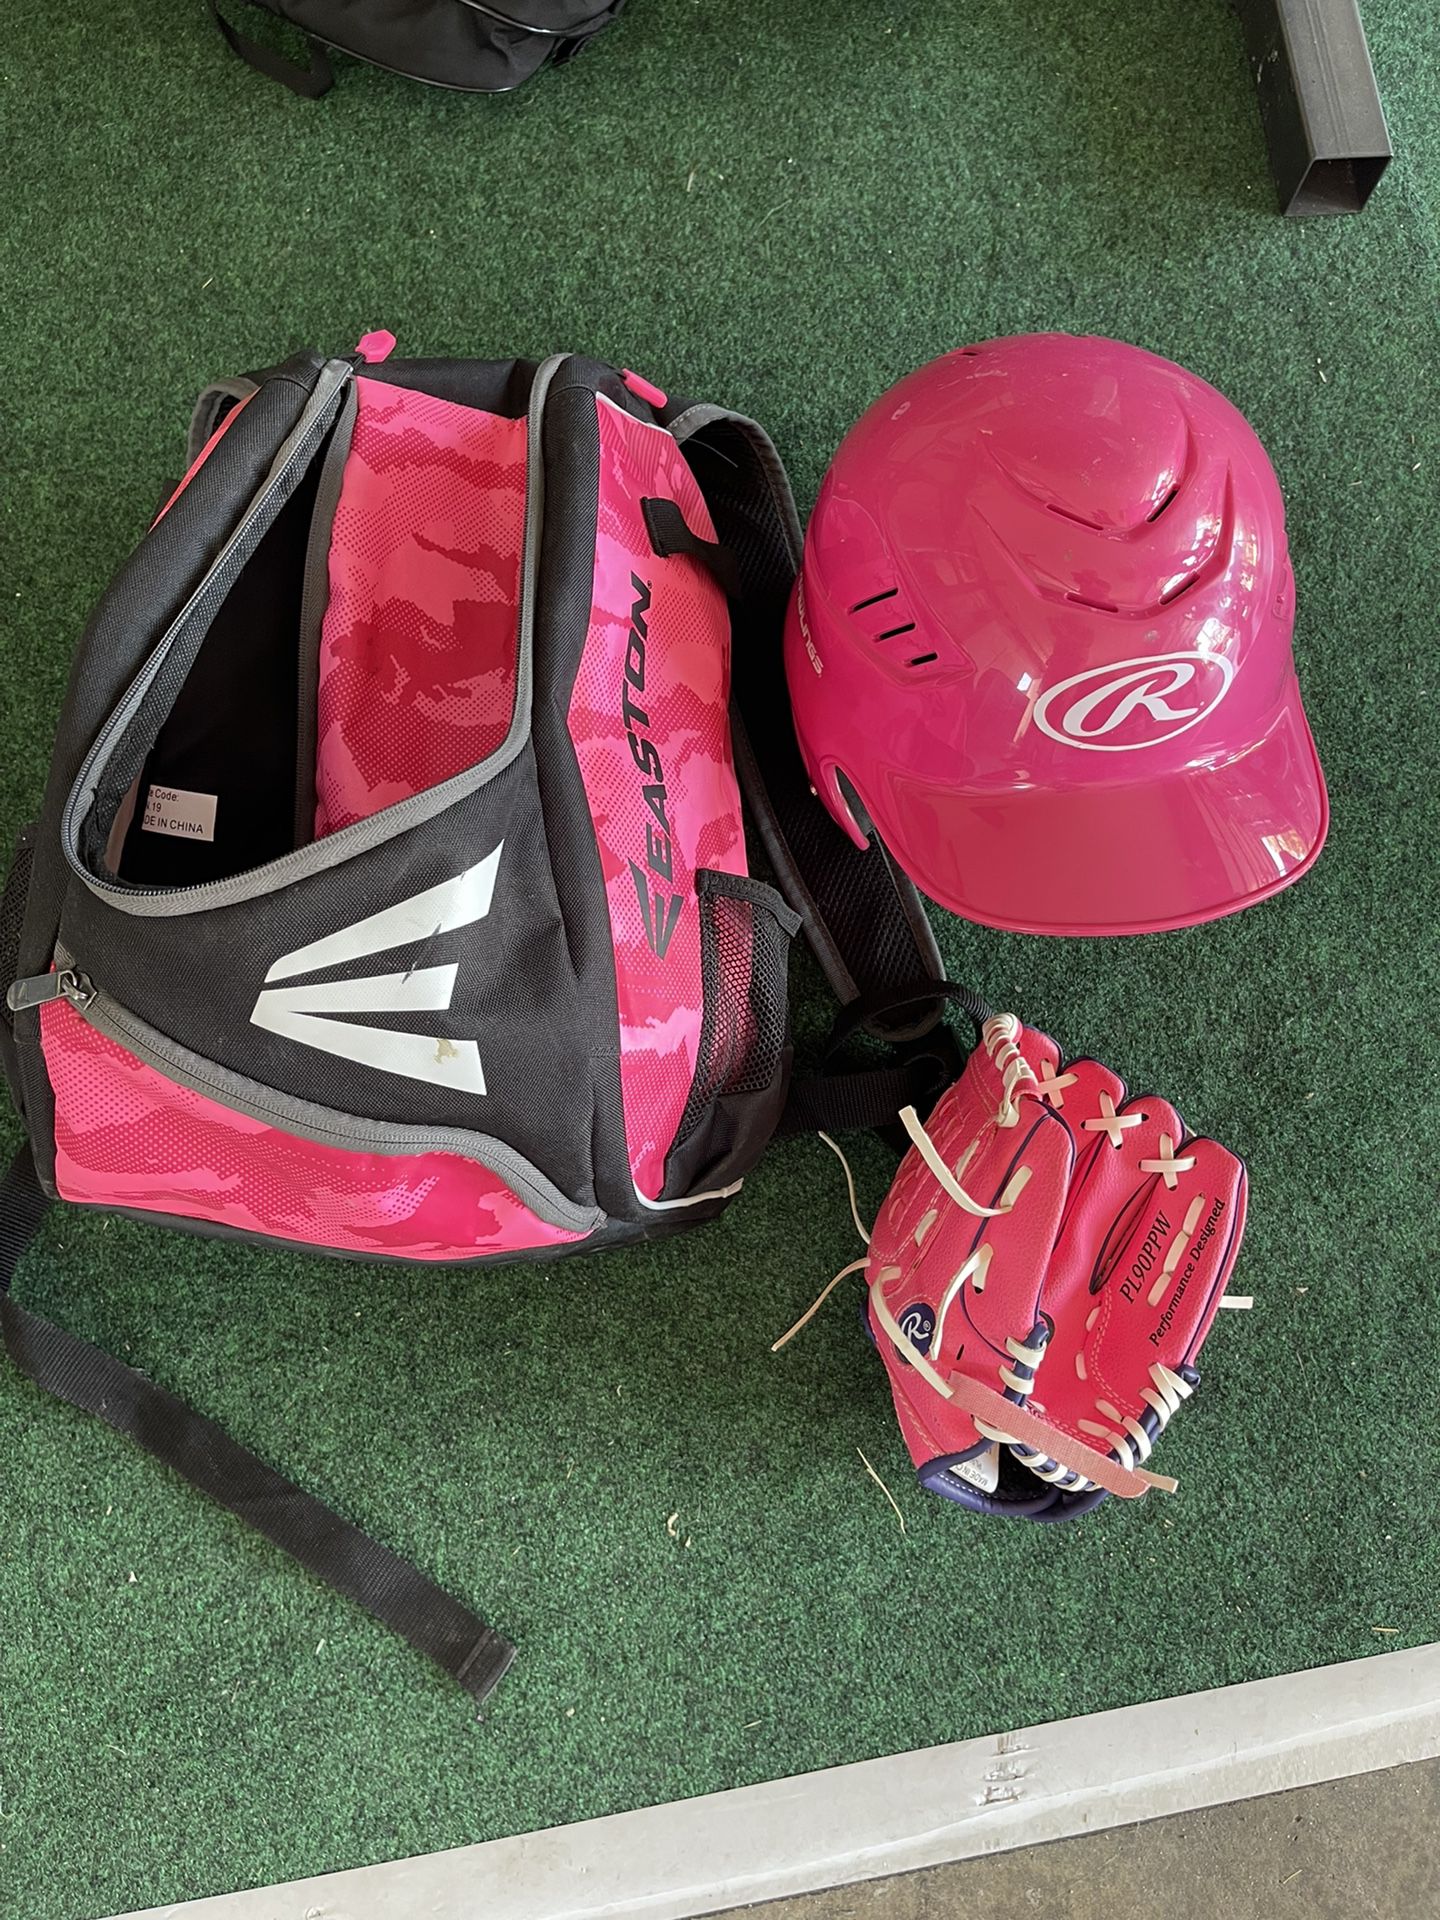 Baseball Backpack Helmet And Glove 